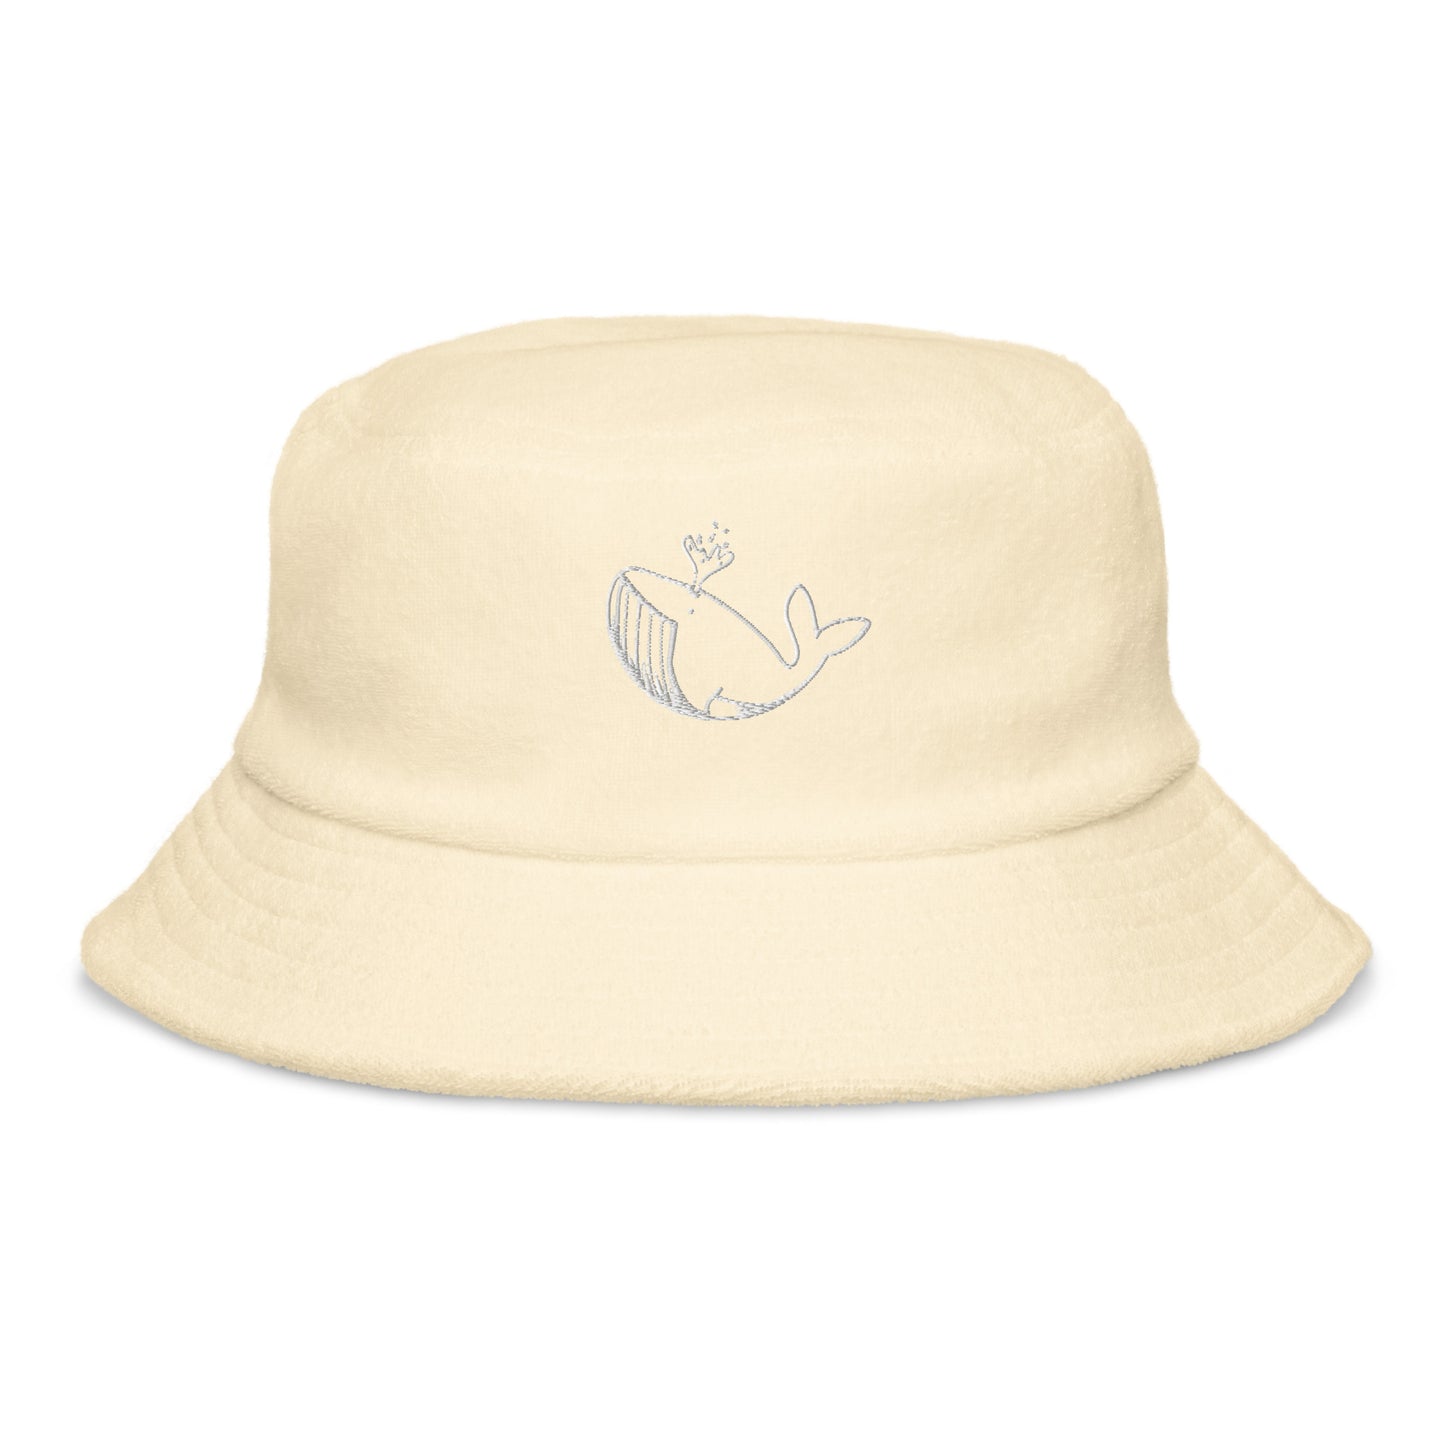 White Stitch Ballenita NFT Terry cloth bucket hat